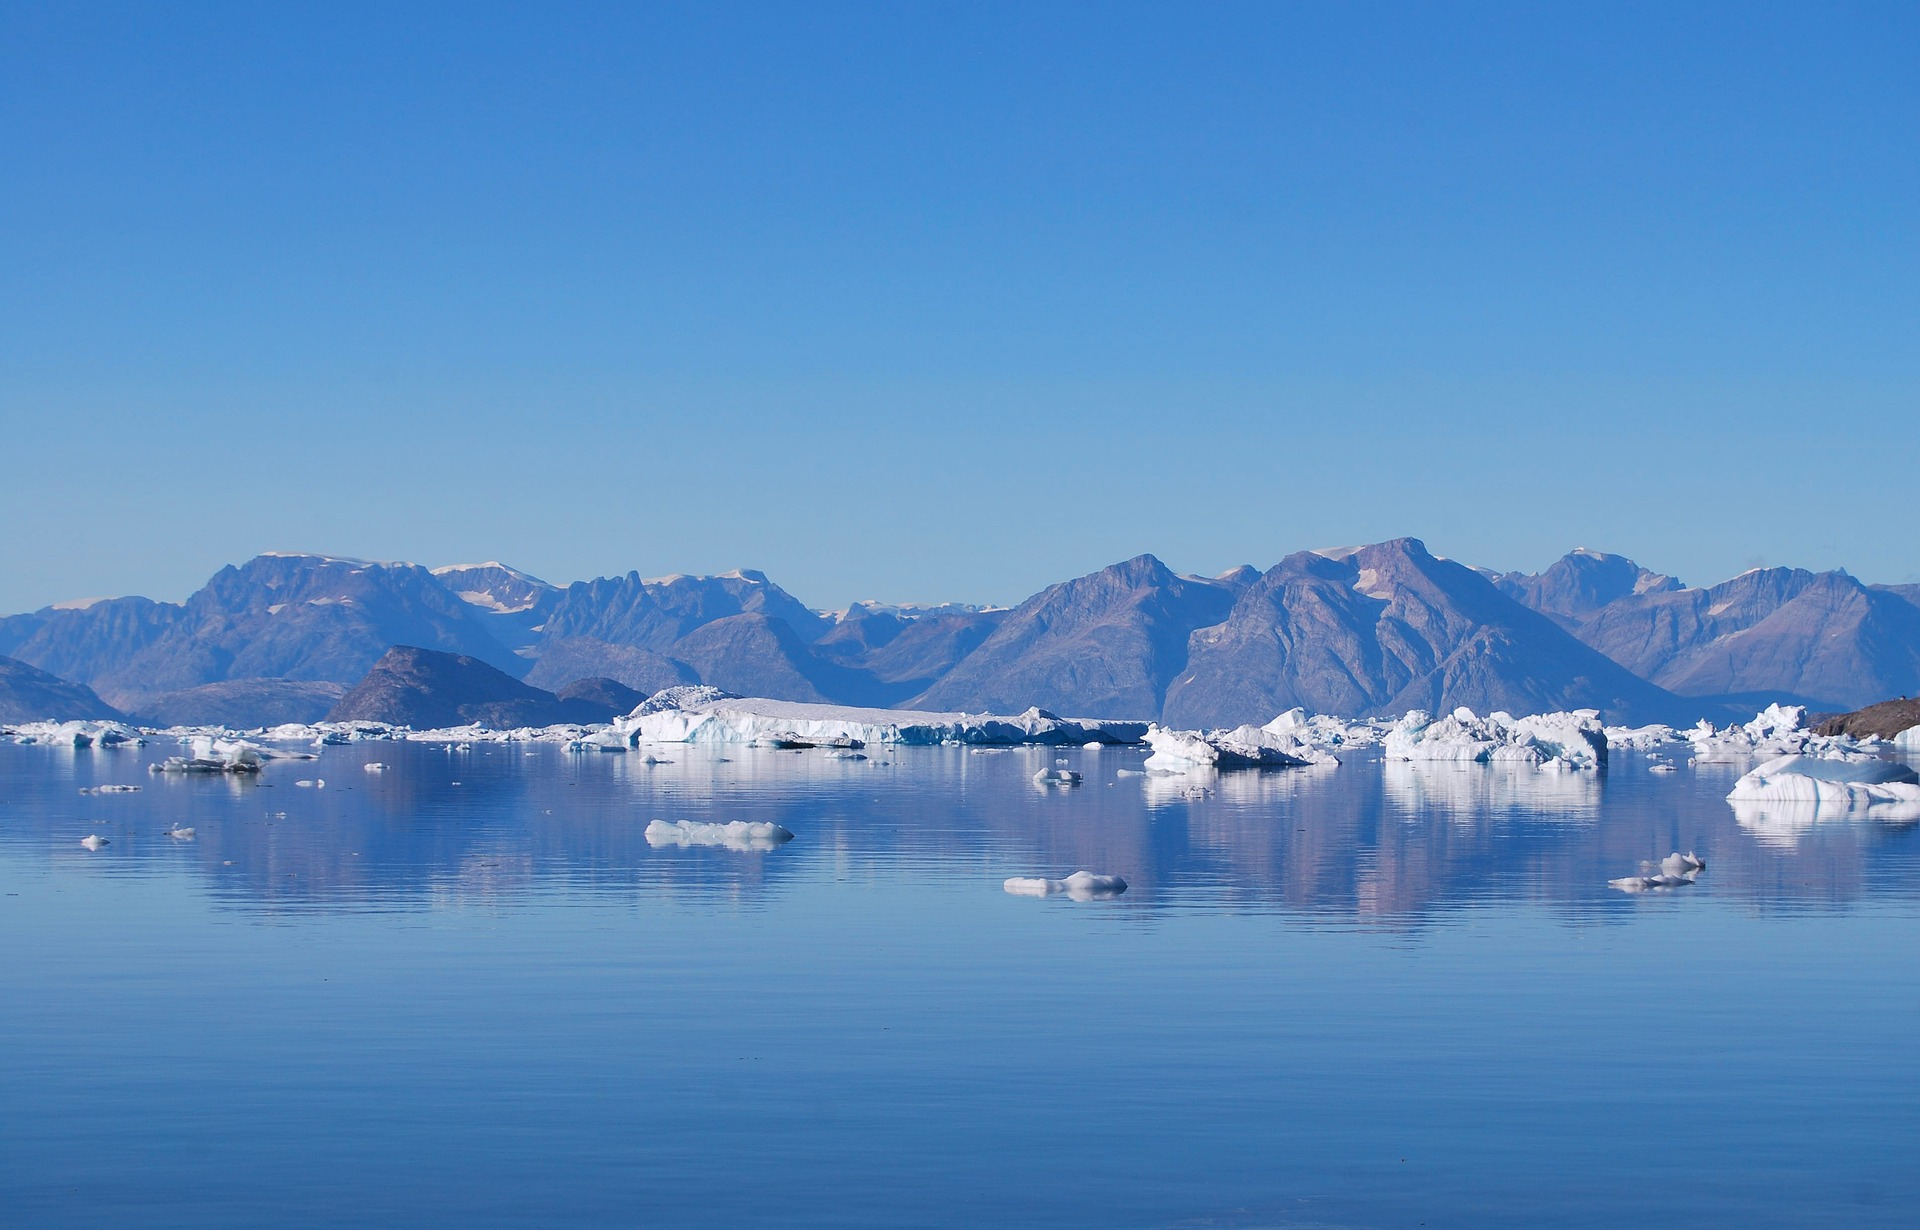 Арктика сегодня: заявления и интересы